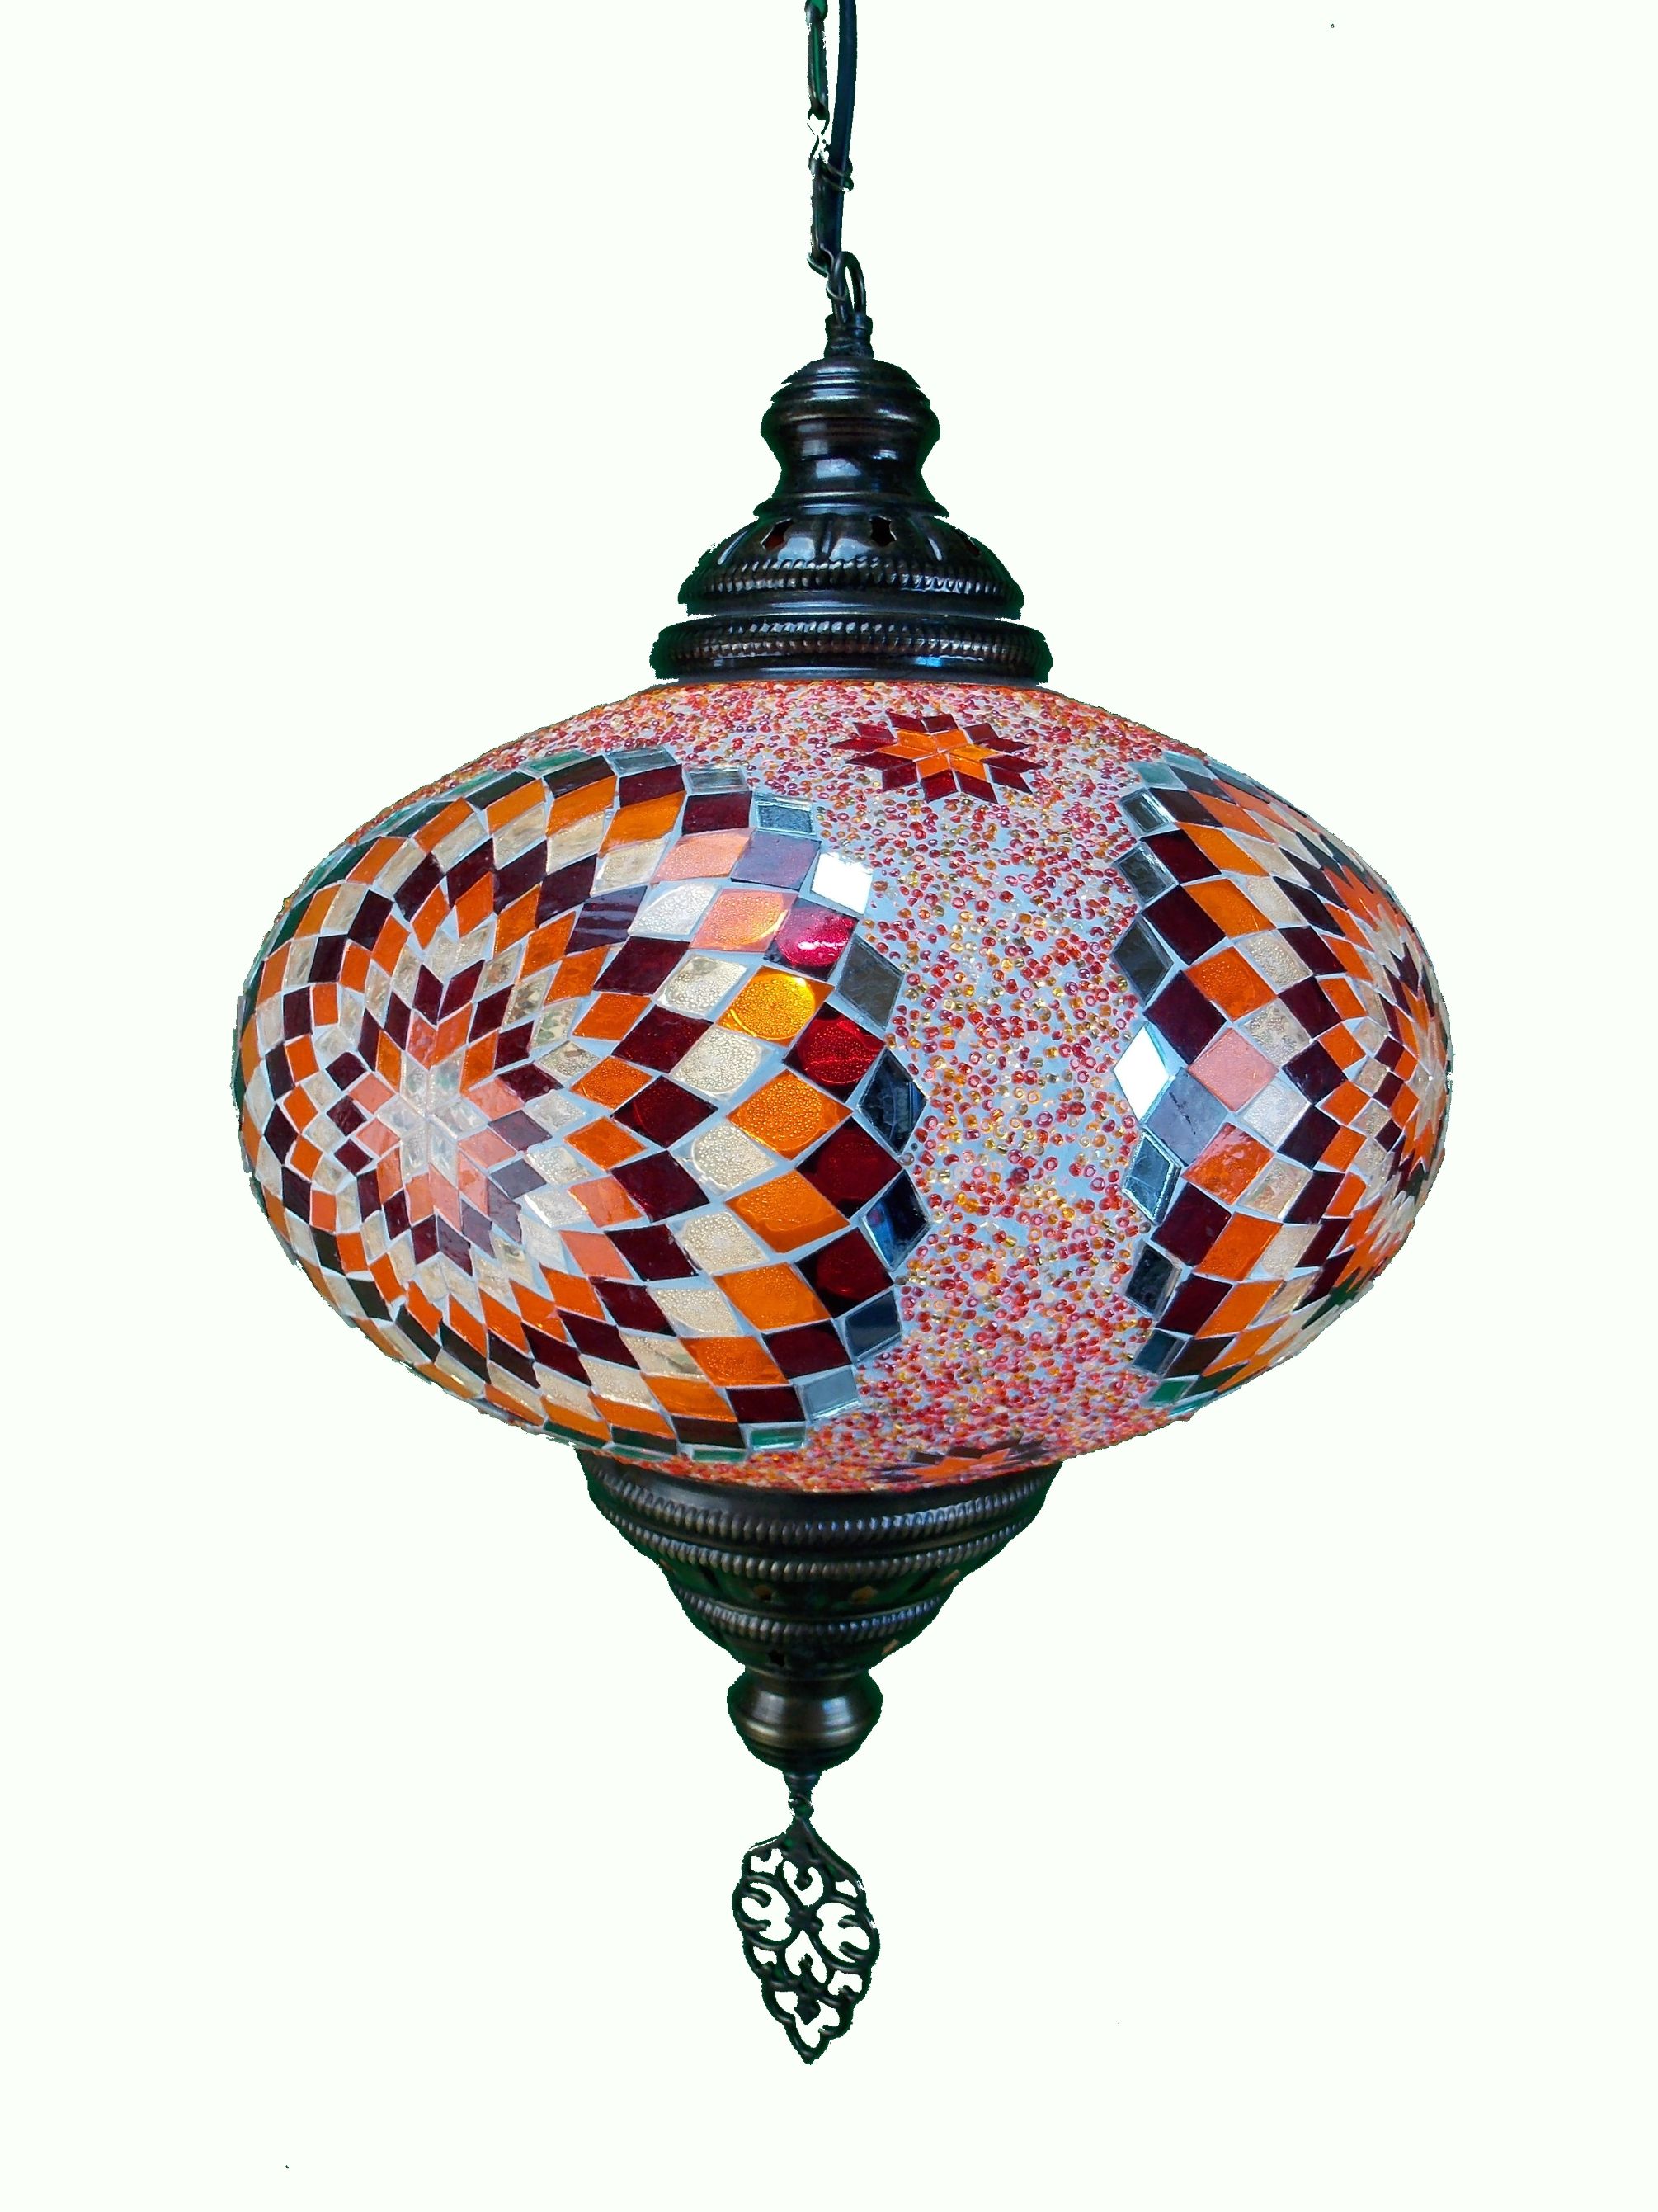 Lustra  turceasca din mozaic  cu glob din sticla si lant din metal 73cm  ,35cm diametrul globului